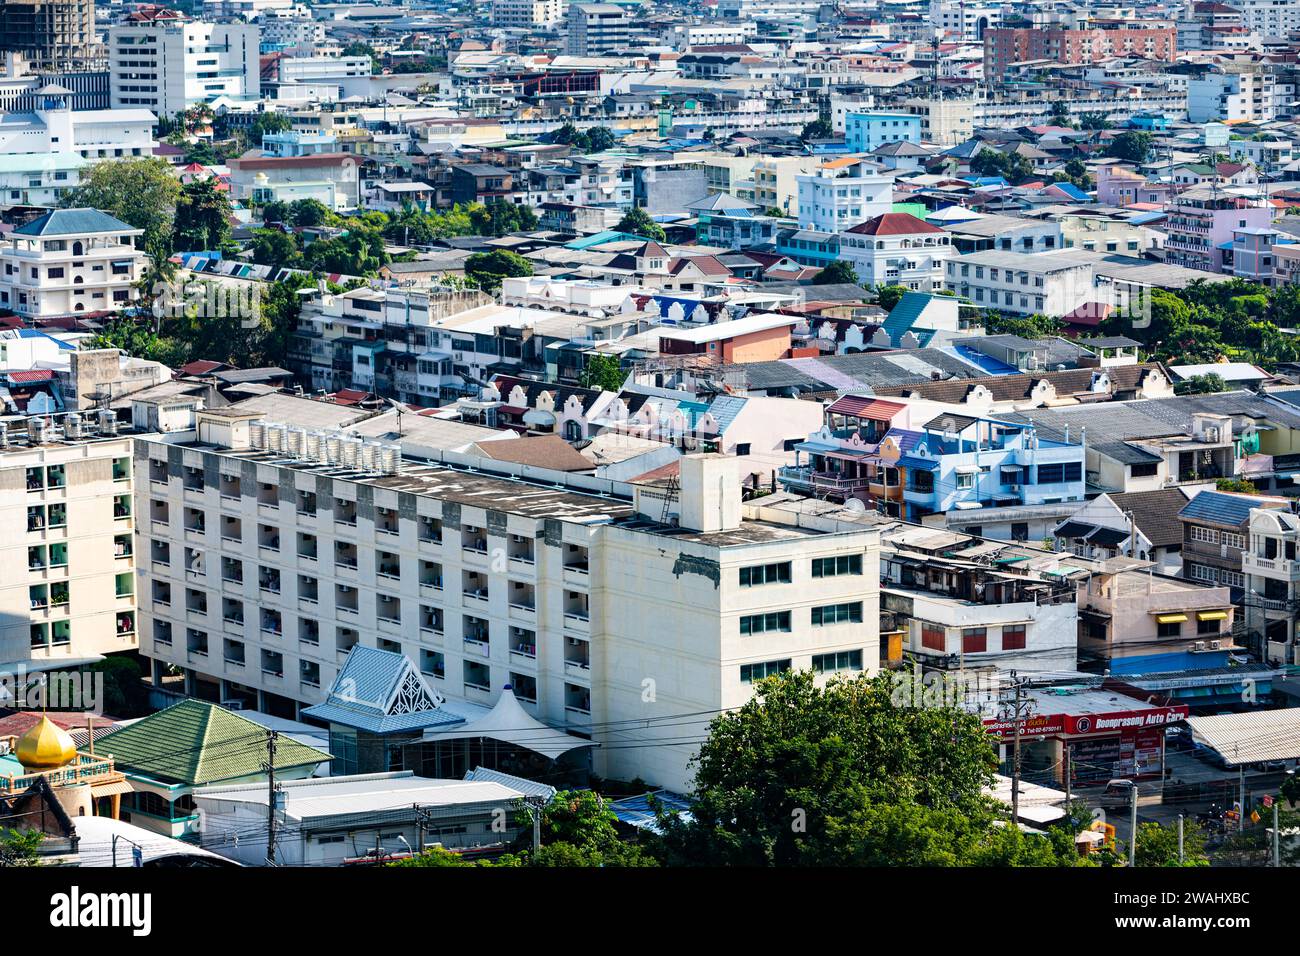 A cityscape shot of dense housing in Bangkok, Thailand Stock Photo